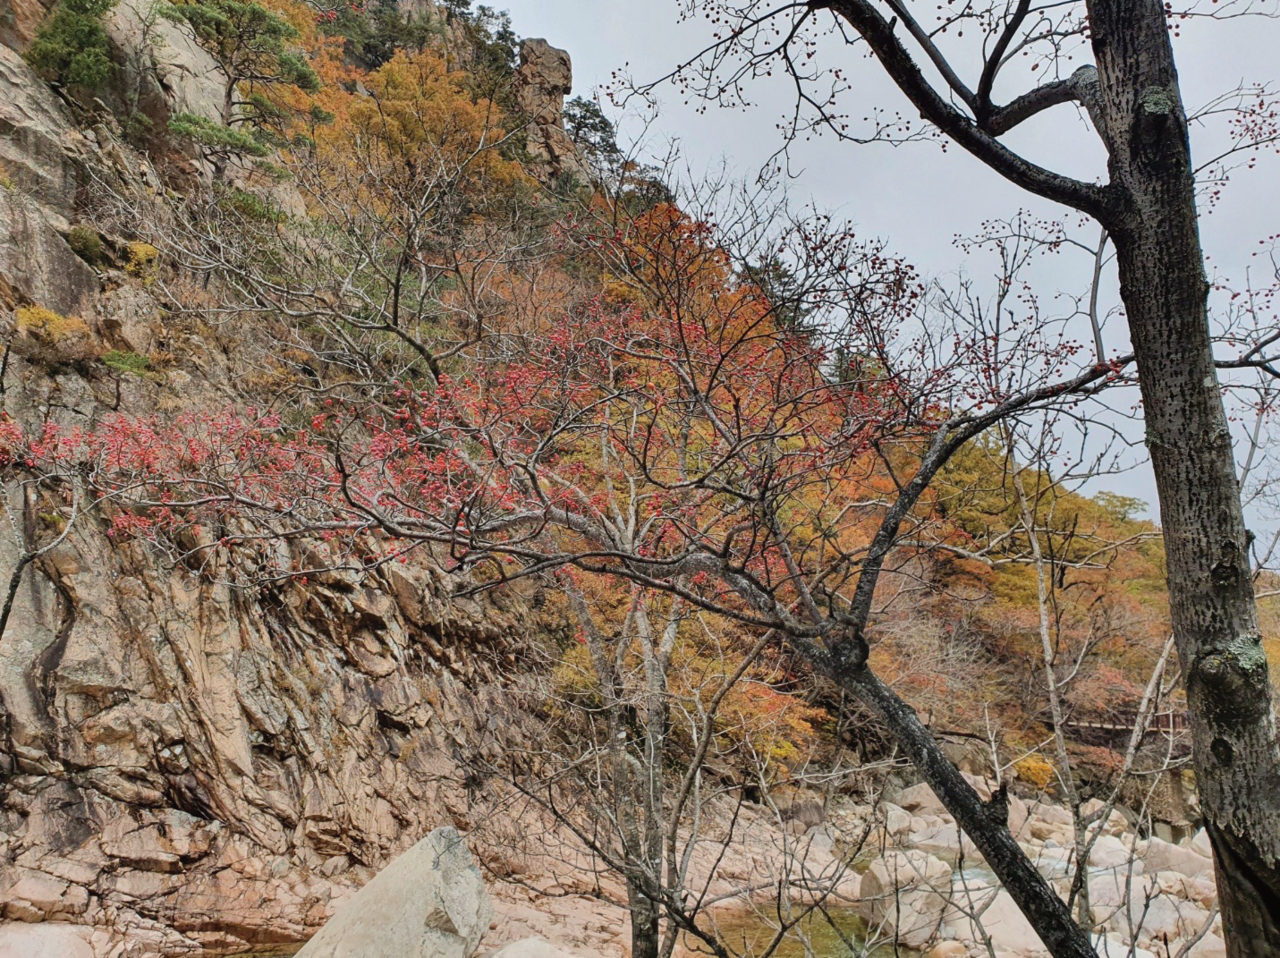 마가목은 해발 500m이상의 고산지대에서 주로 자란다. 사진은 설악산의 마가목 나무다. 붉은 색 열매가 가을 단풍과 어우러져 설악을 더욱 붉게 만들고 있다.